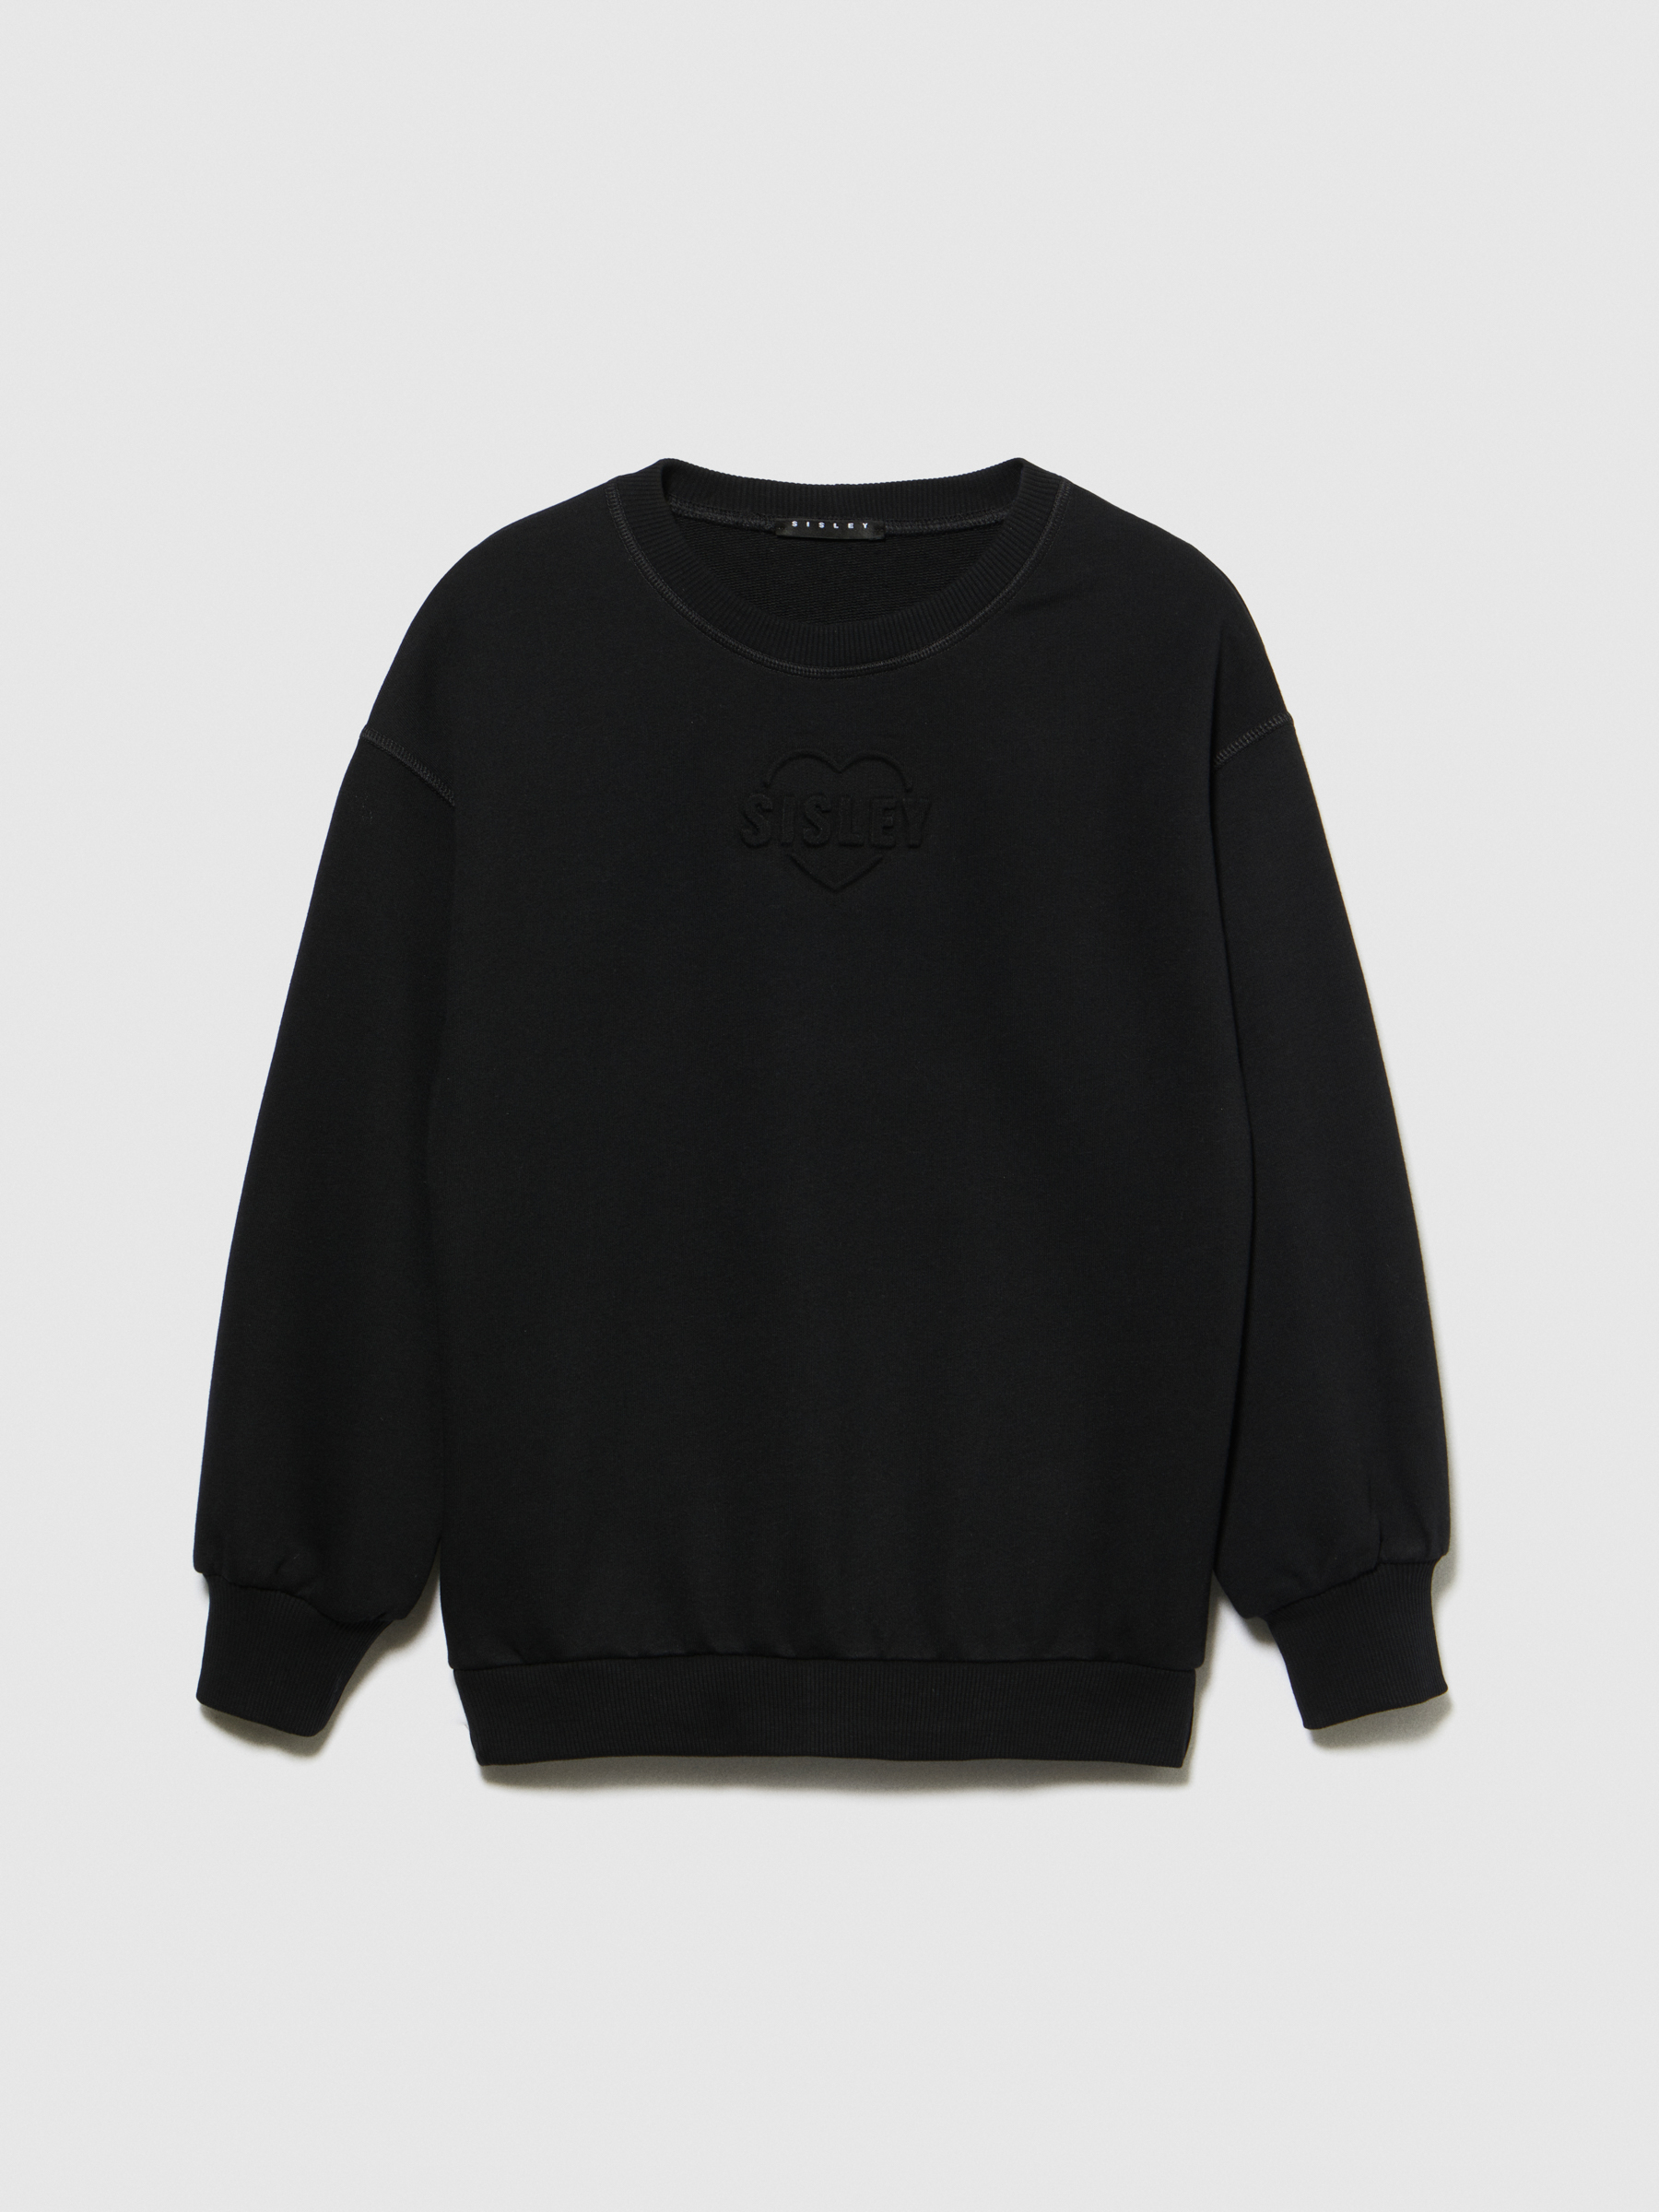 Sisley Young - Sweatshirt With Embossed Print, Woman, Black, Size: EL